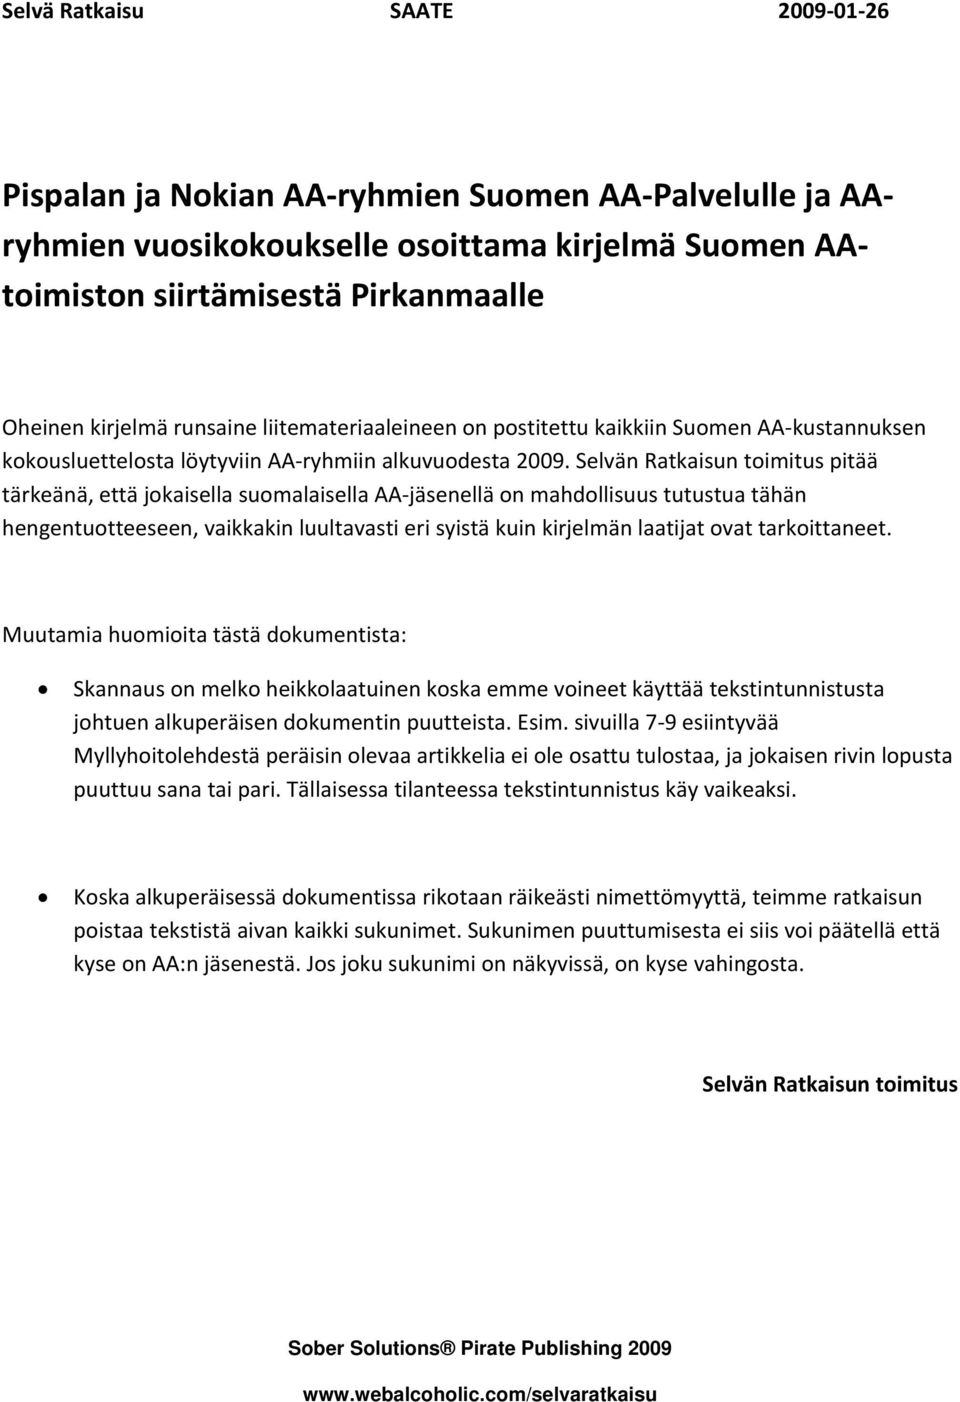 Selvän Ratkaisun toimitus pitää tärkeänä, että jokaisella suomalaisella AA jäsenellä on mahdollisuus tutustua tähän hengentuotteeseen, vaikkakin luultavasti eri syistä kuin kirjelmän laatijat ovat